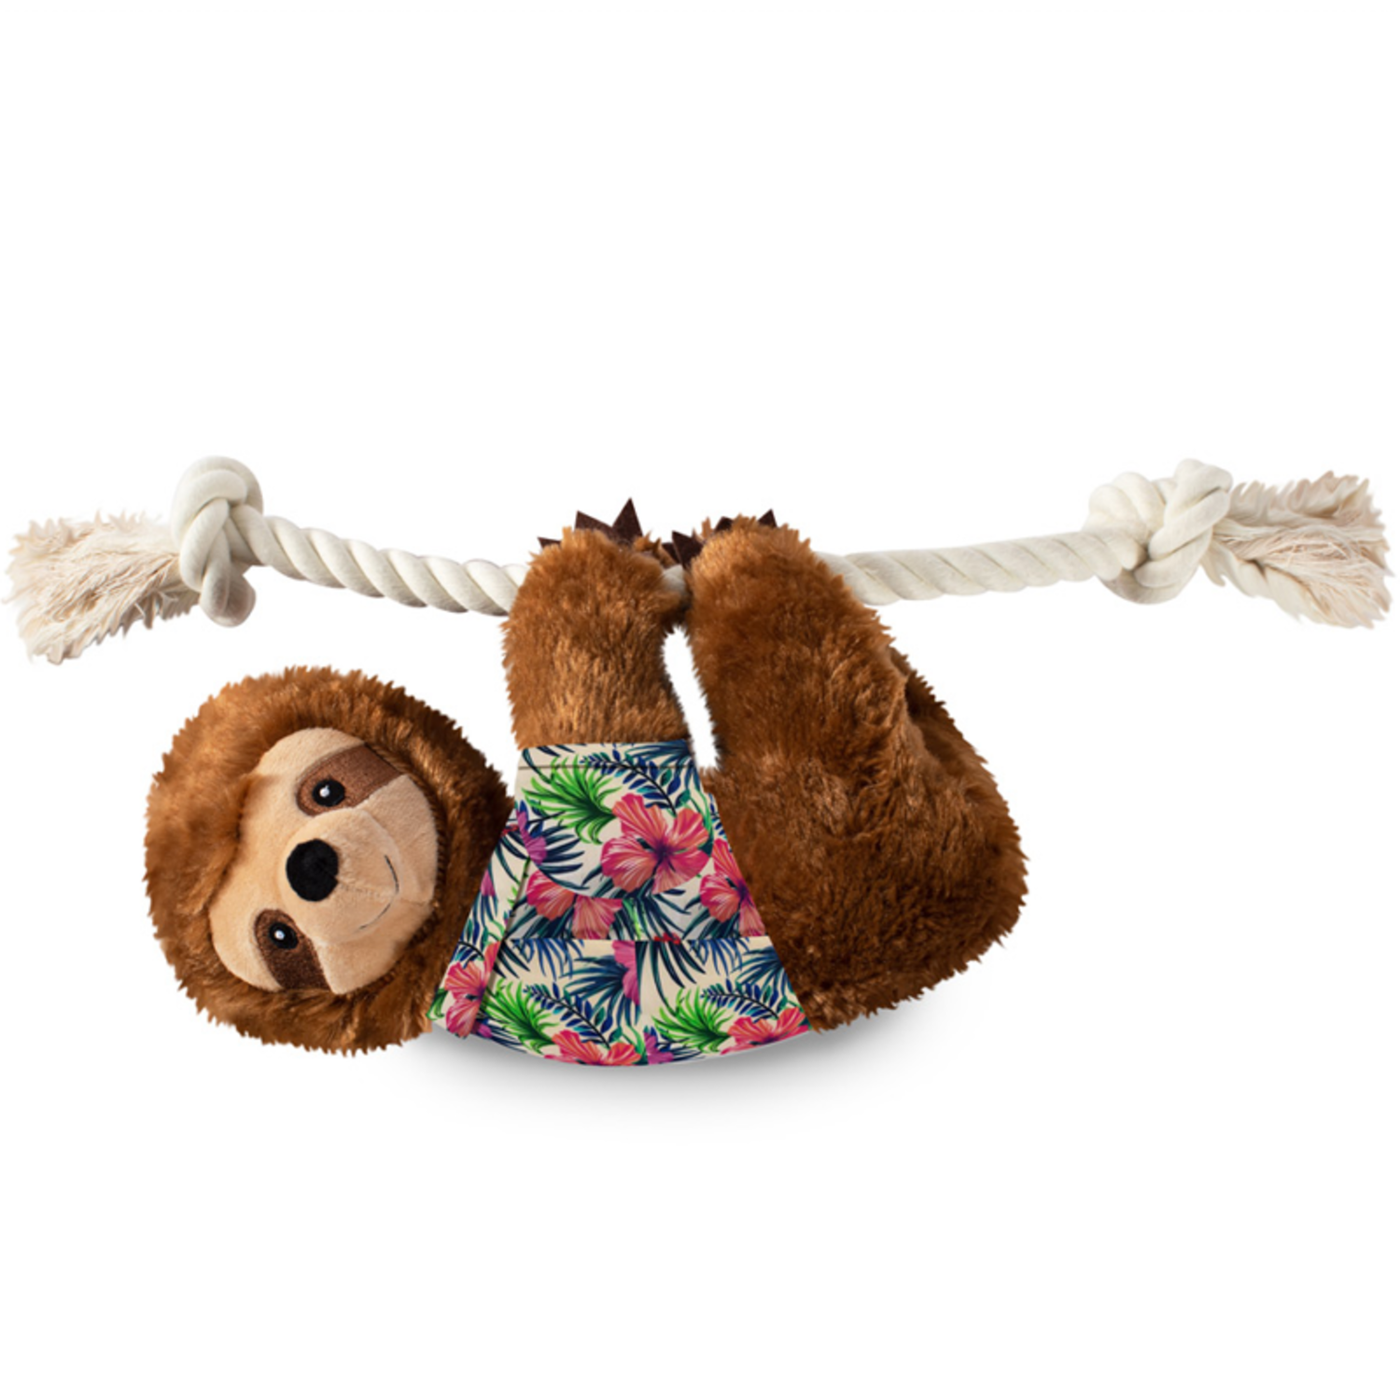 Fringe Plush Dog Toy - Hangin' Around for Summer Sloth